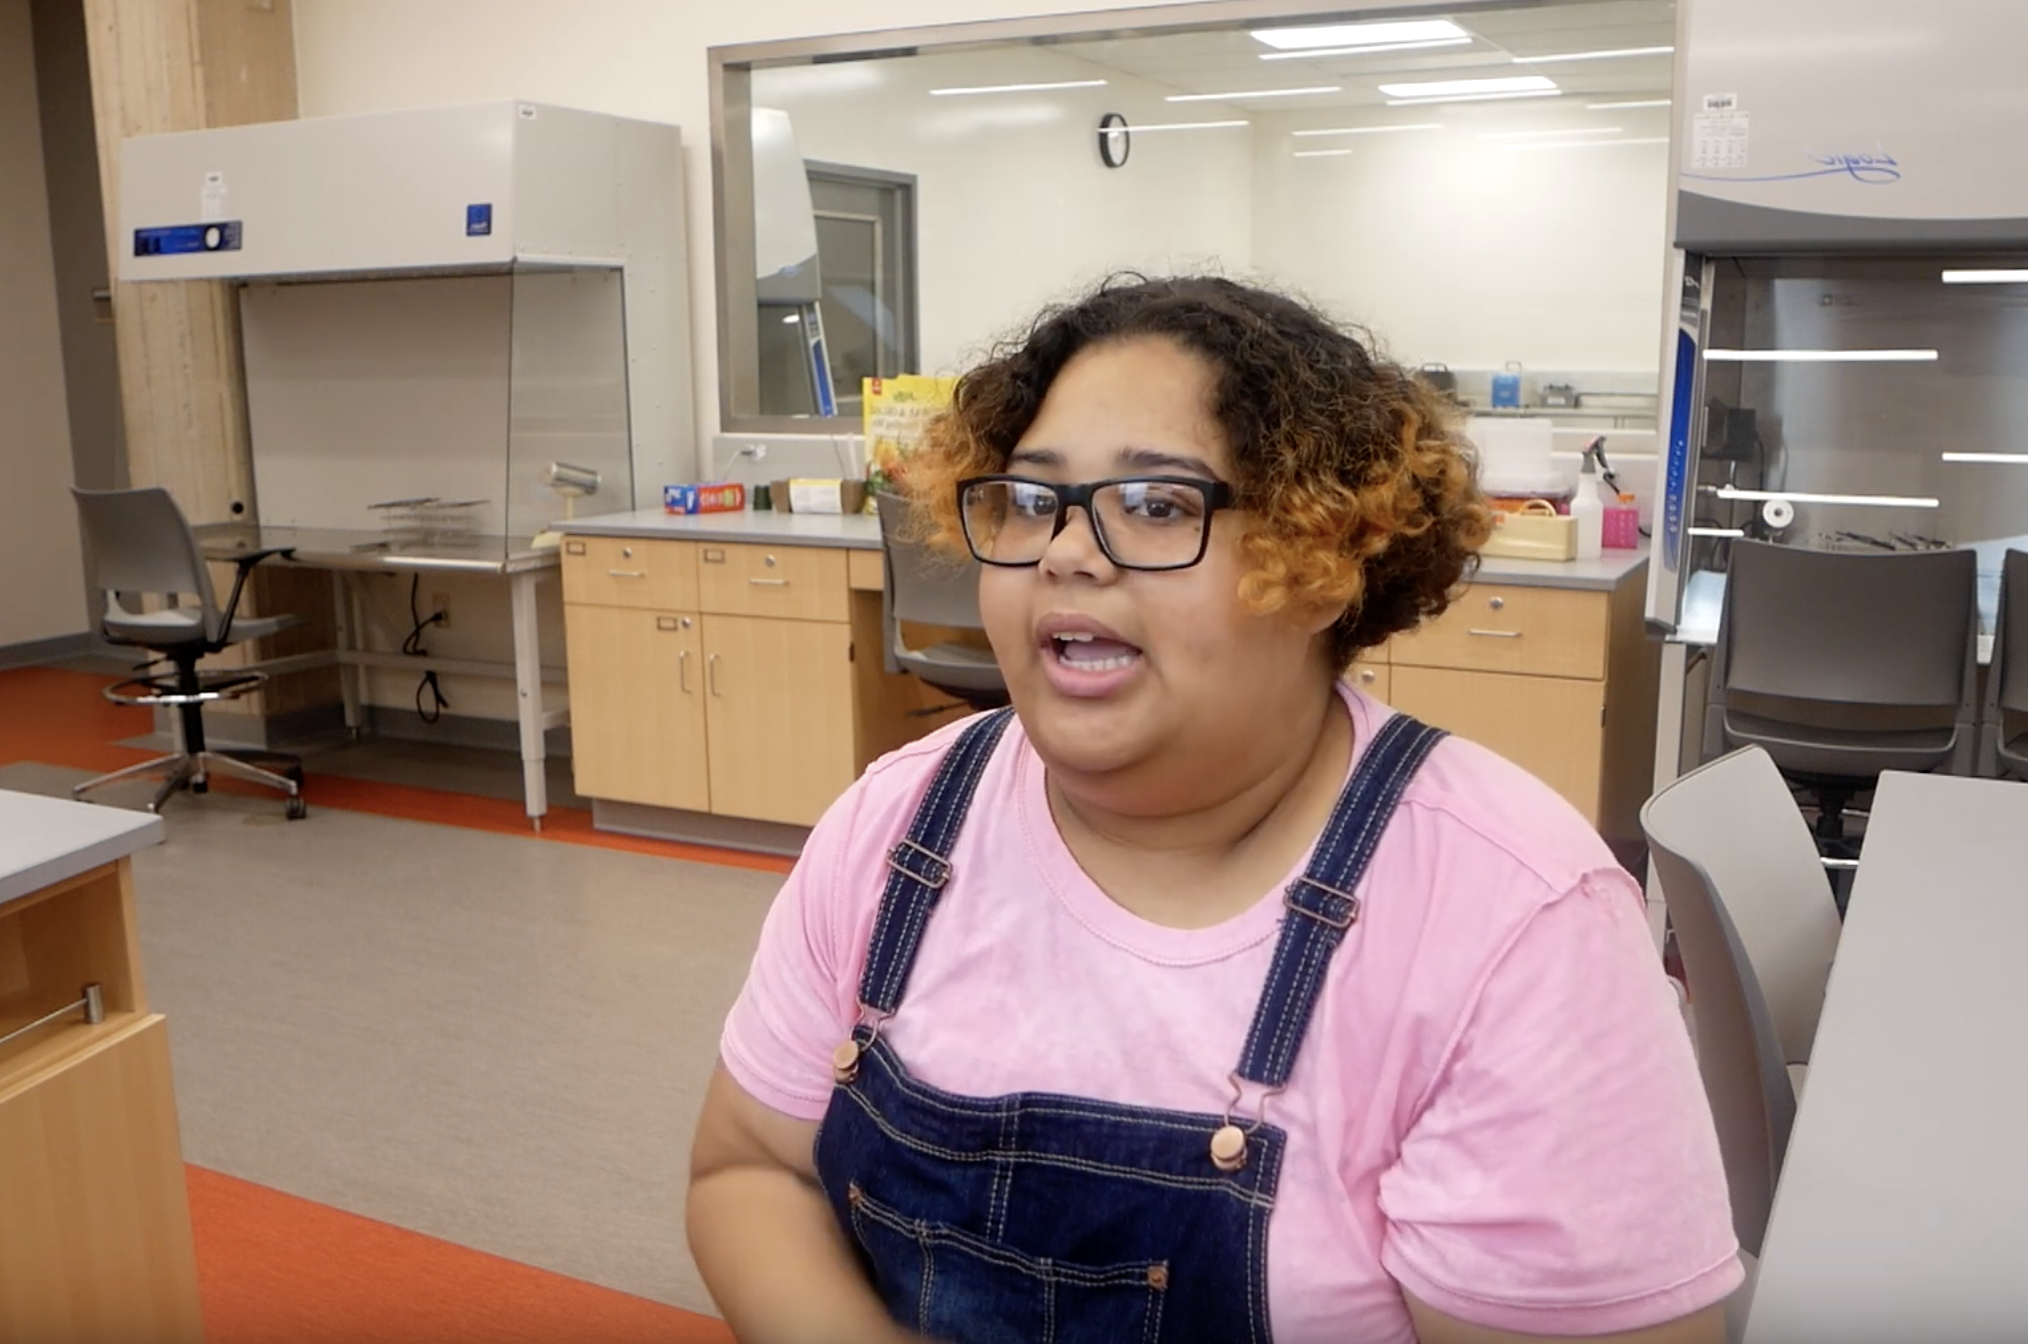 凯什拉·卡布雷拉在实验室讲话的照片. 她穿着粉红色的t恤和蓝色的工作服，戴着眼镜.